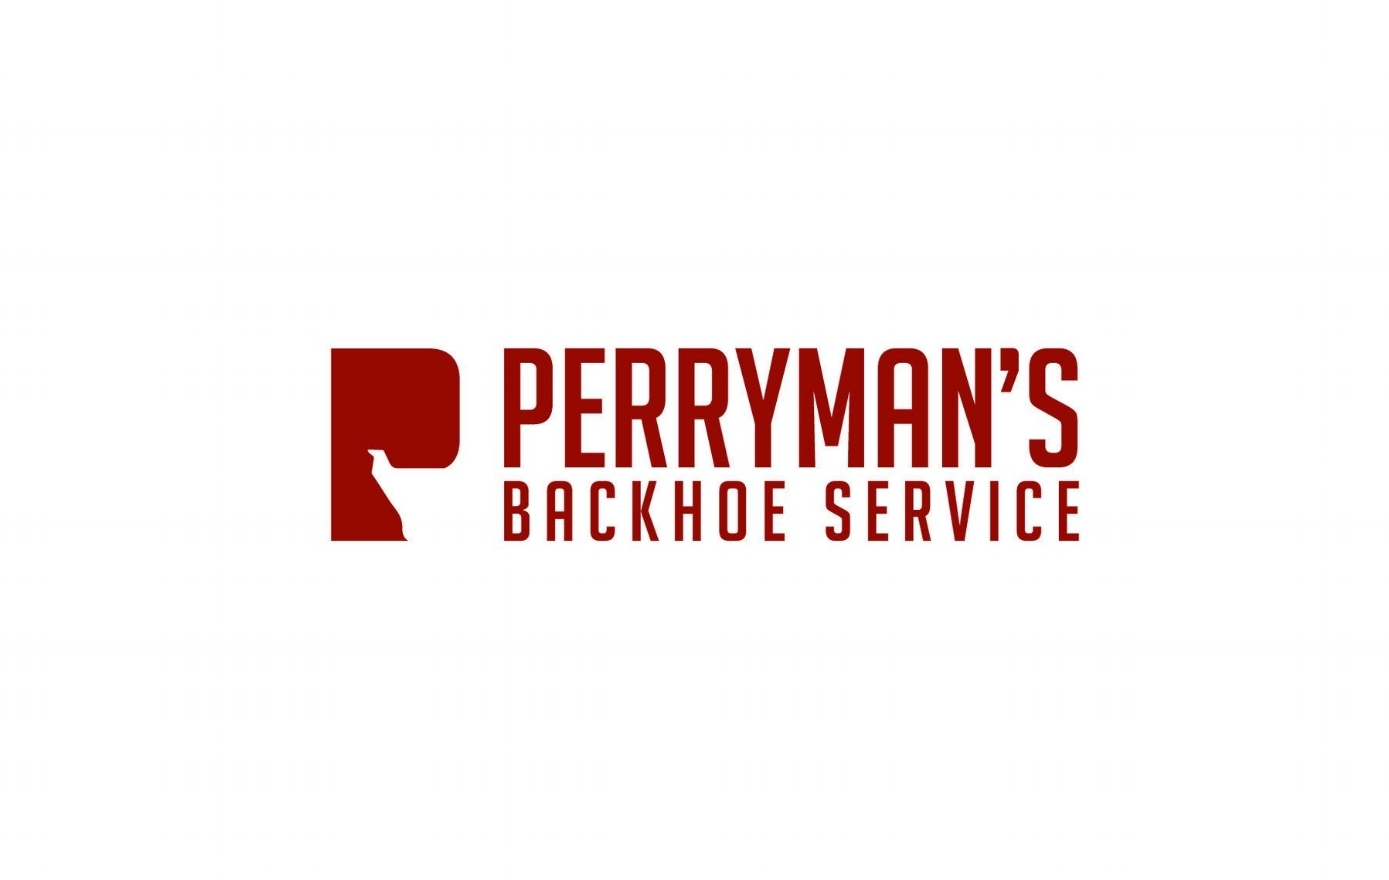 Perrymans Backhoe Service_V2_Final-10.jpg